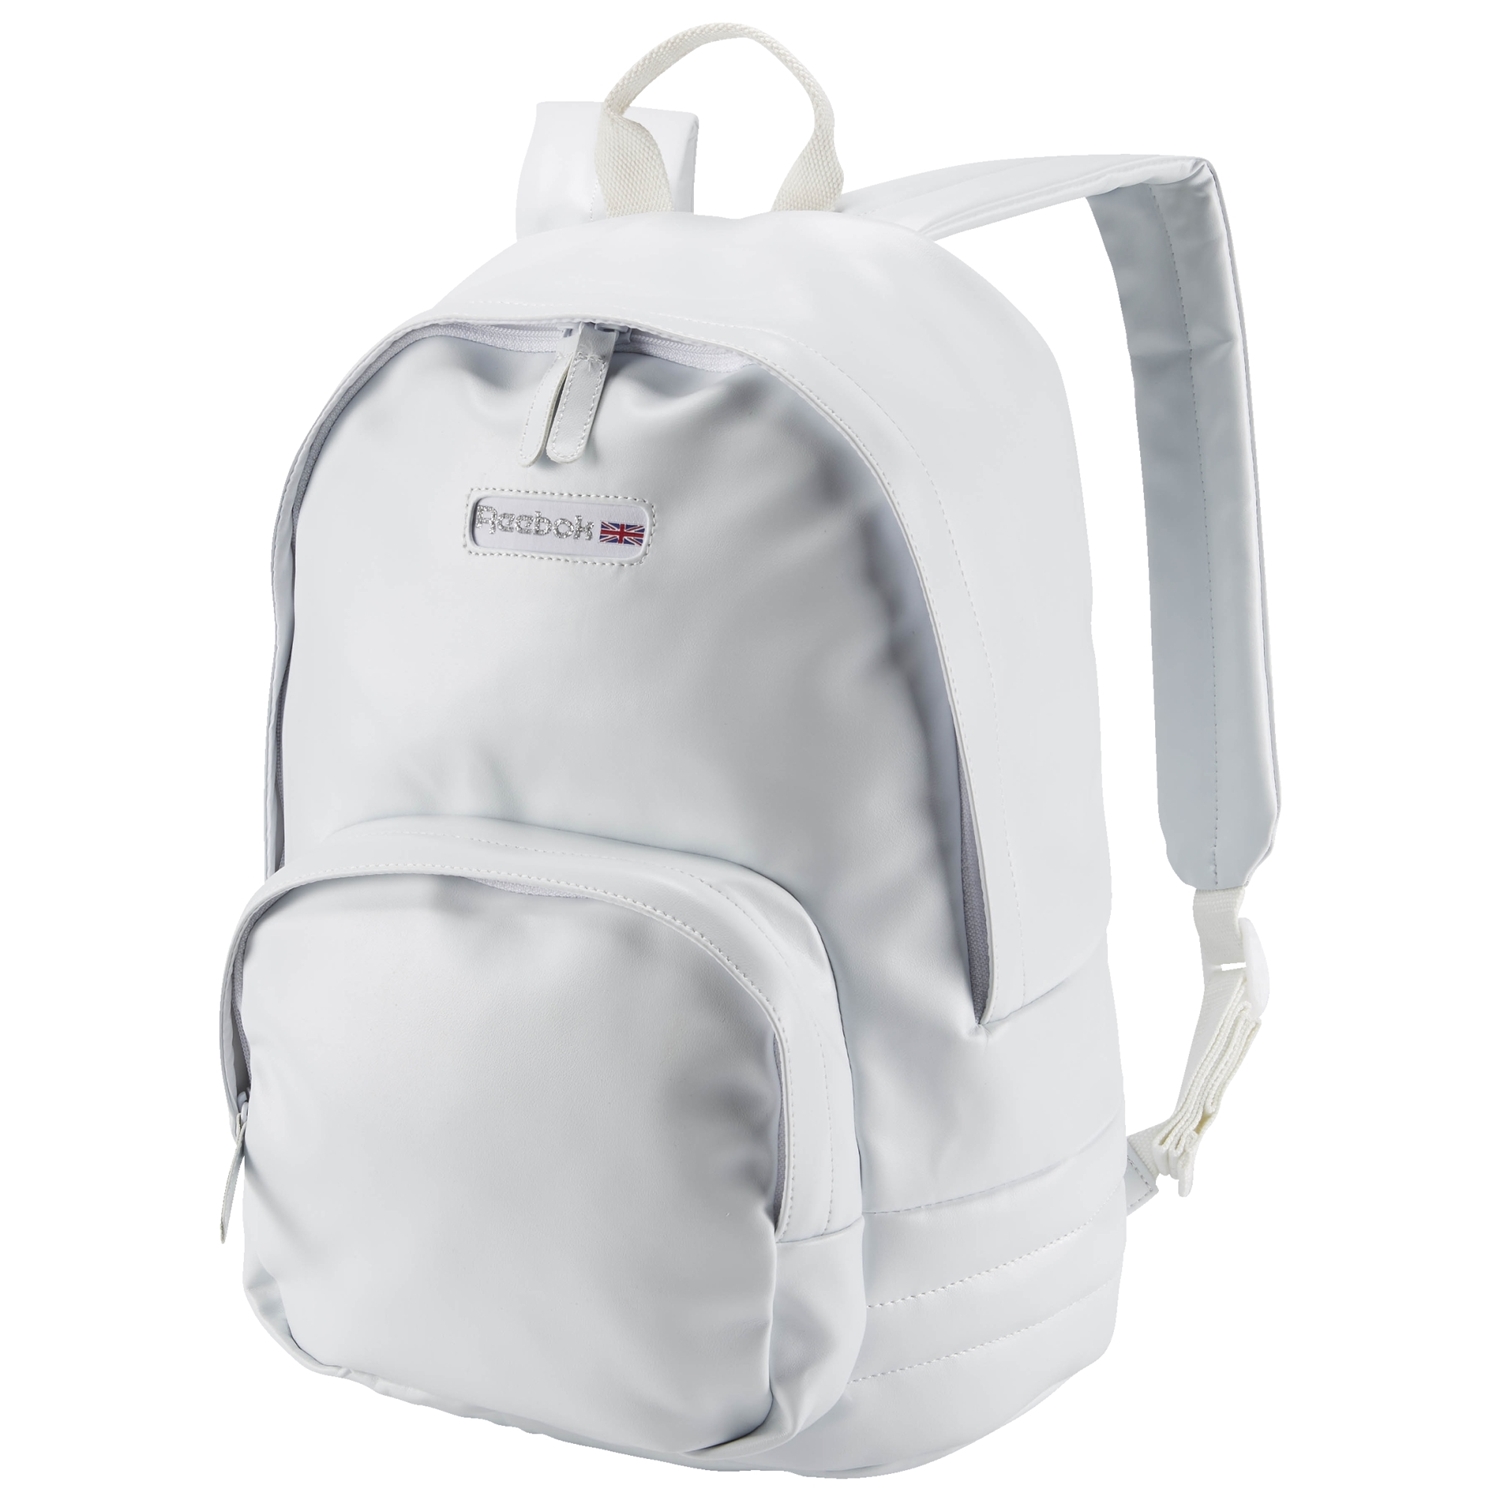 Reebok Classic Freestyle Backpack (White) - manelsanchez.com